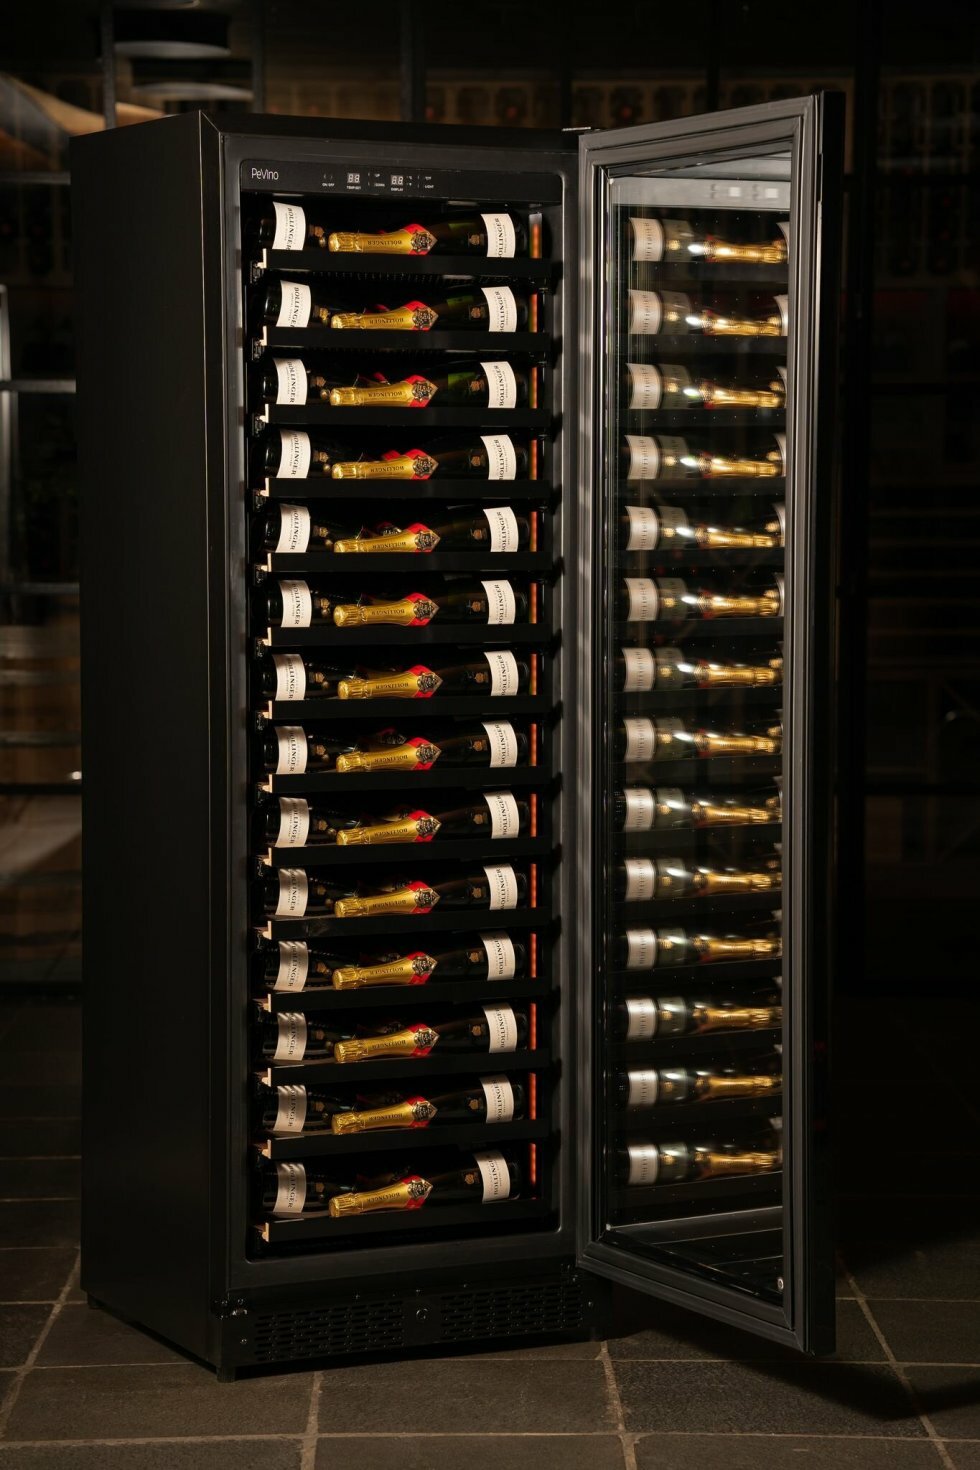 PeVino Imperial Eco - Verdens mest energieffektive vinkøleskab i fuld højde - Verdens mest energibesparende vinkøleskab er dansk